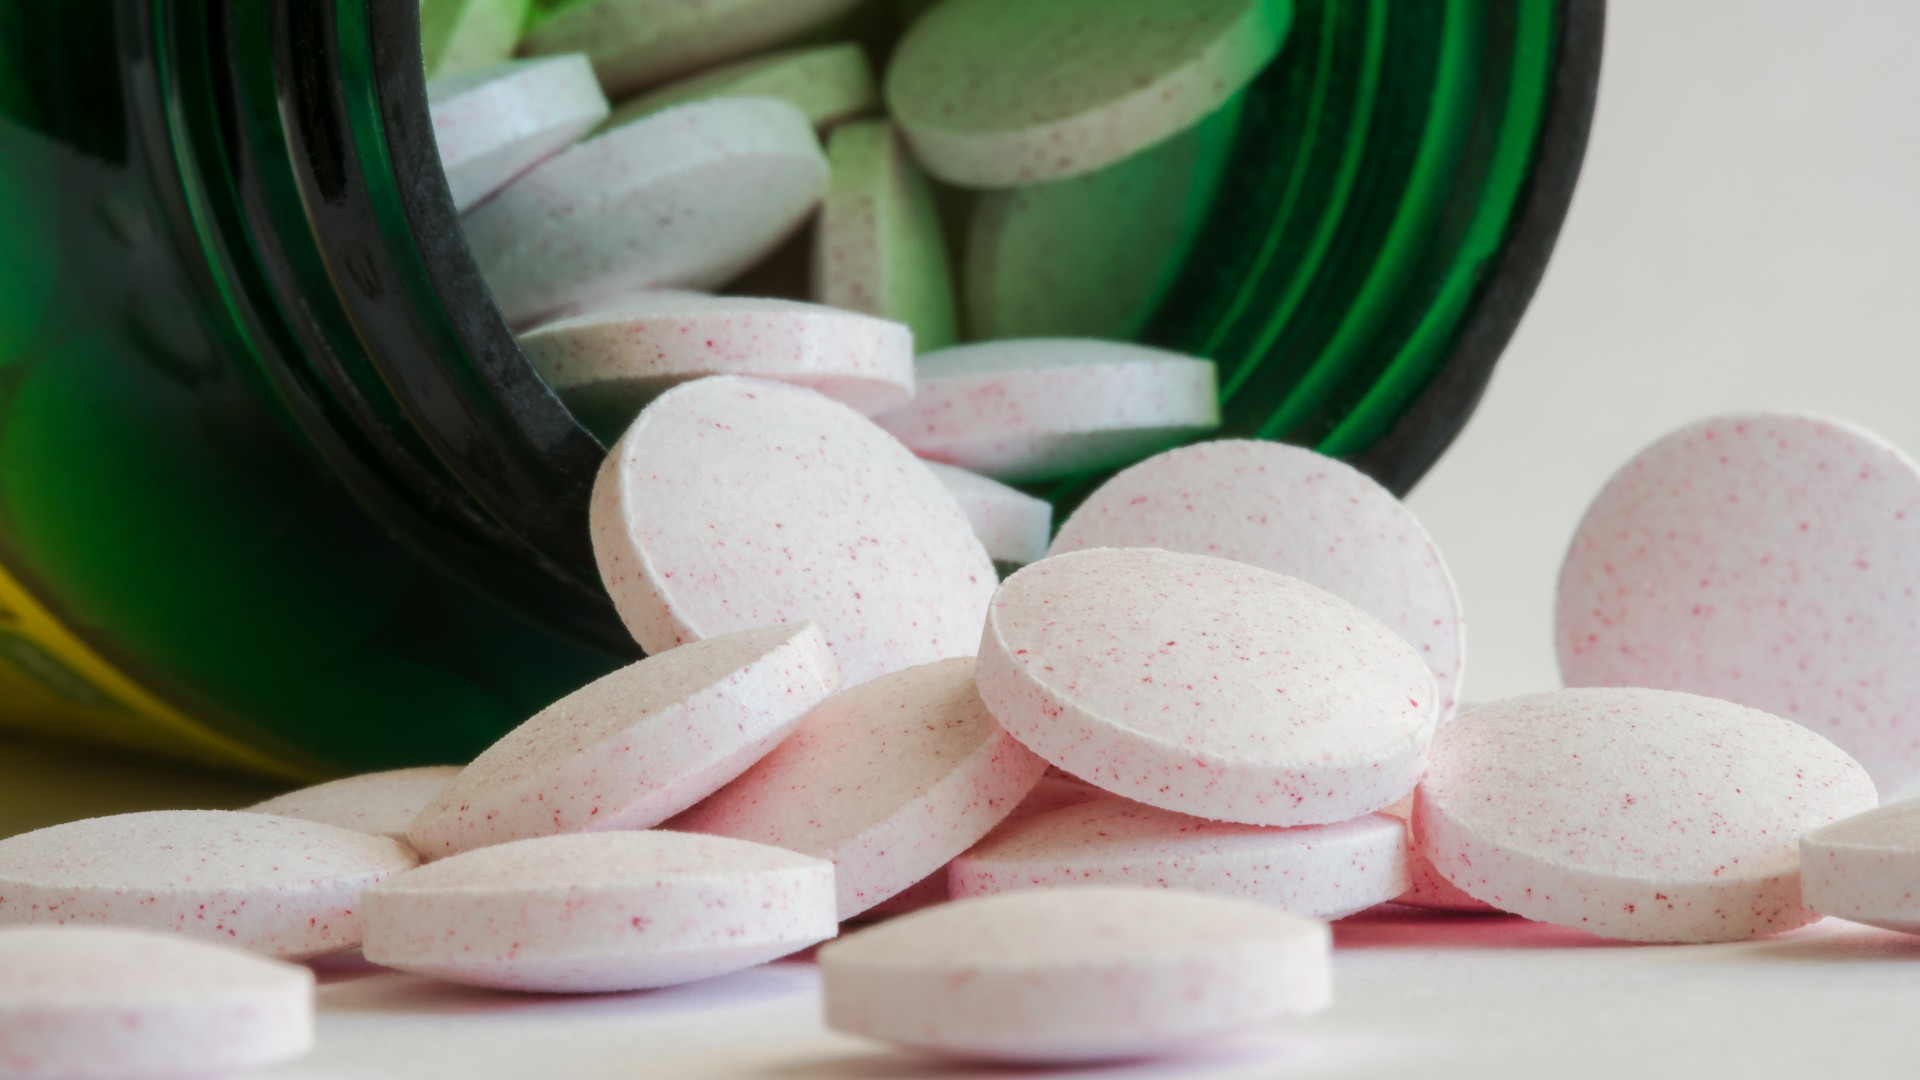 Таблетки мелатонина высыпаются из зеленой бутылки.  Таблетки белого цвета с мелкими розовыми крапинками.  Они похожи на маленькие диски.